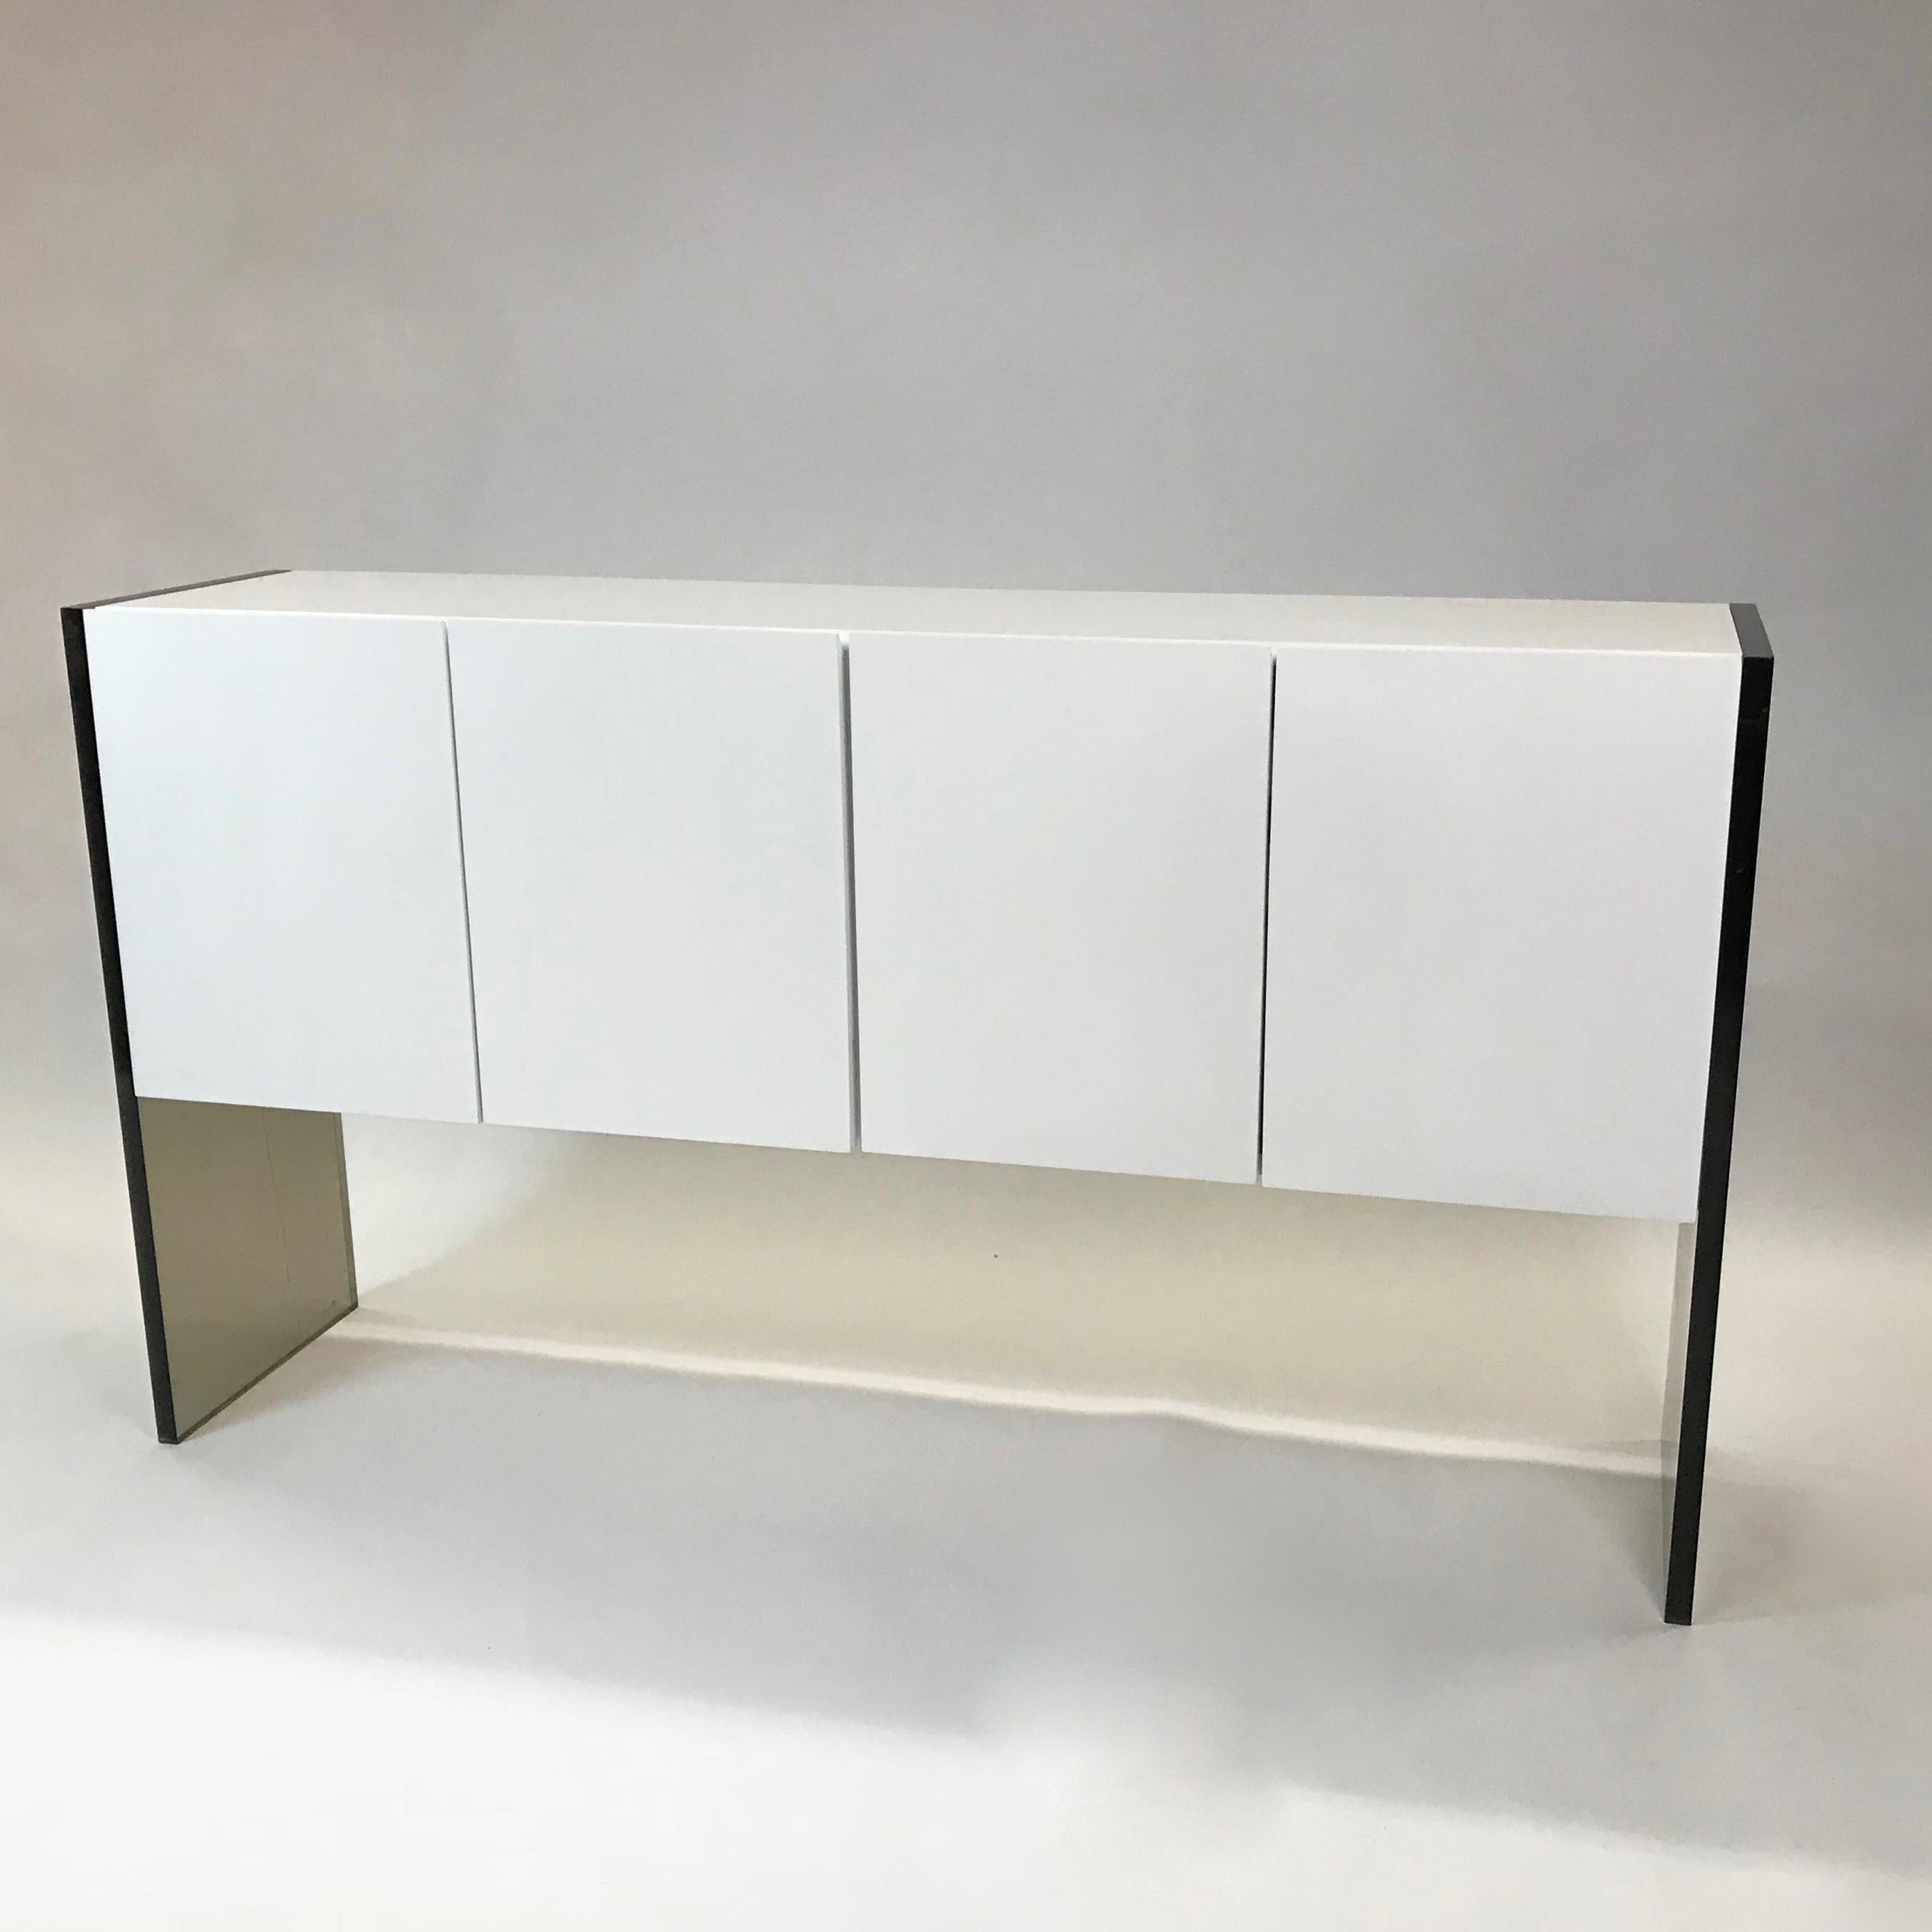 Minimalistisches und schickes Mid-Century Modern Sideboard oder Kredenz von Milo Baughman für Thayer Coggin mit einem sauberen, weiß lackierten Doppelschrank mit ausziehbaren und geräucherten Glas-Innenböden, kontrastiert von geräucherten